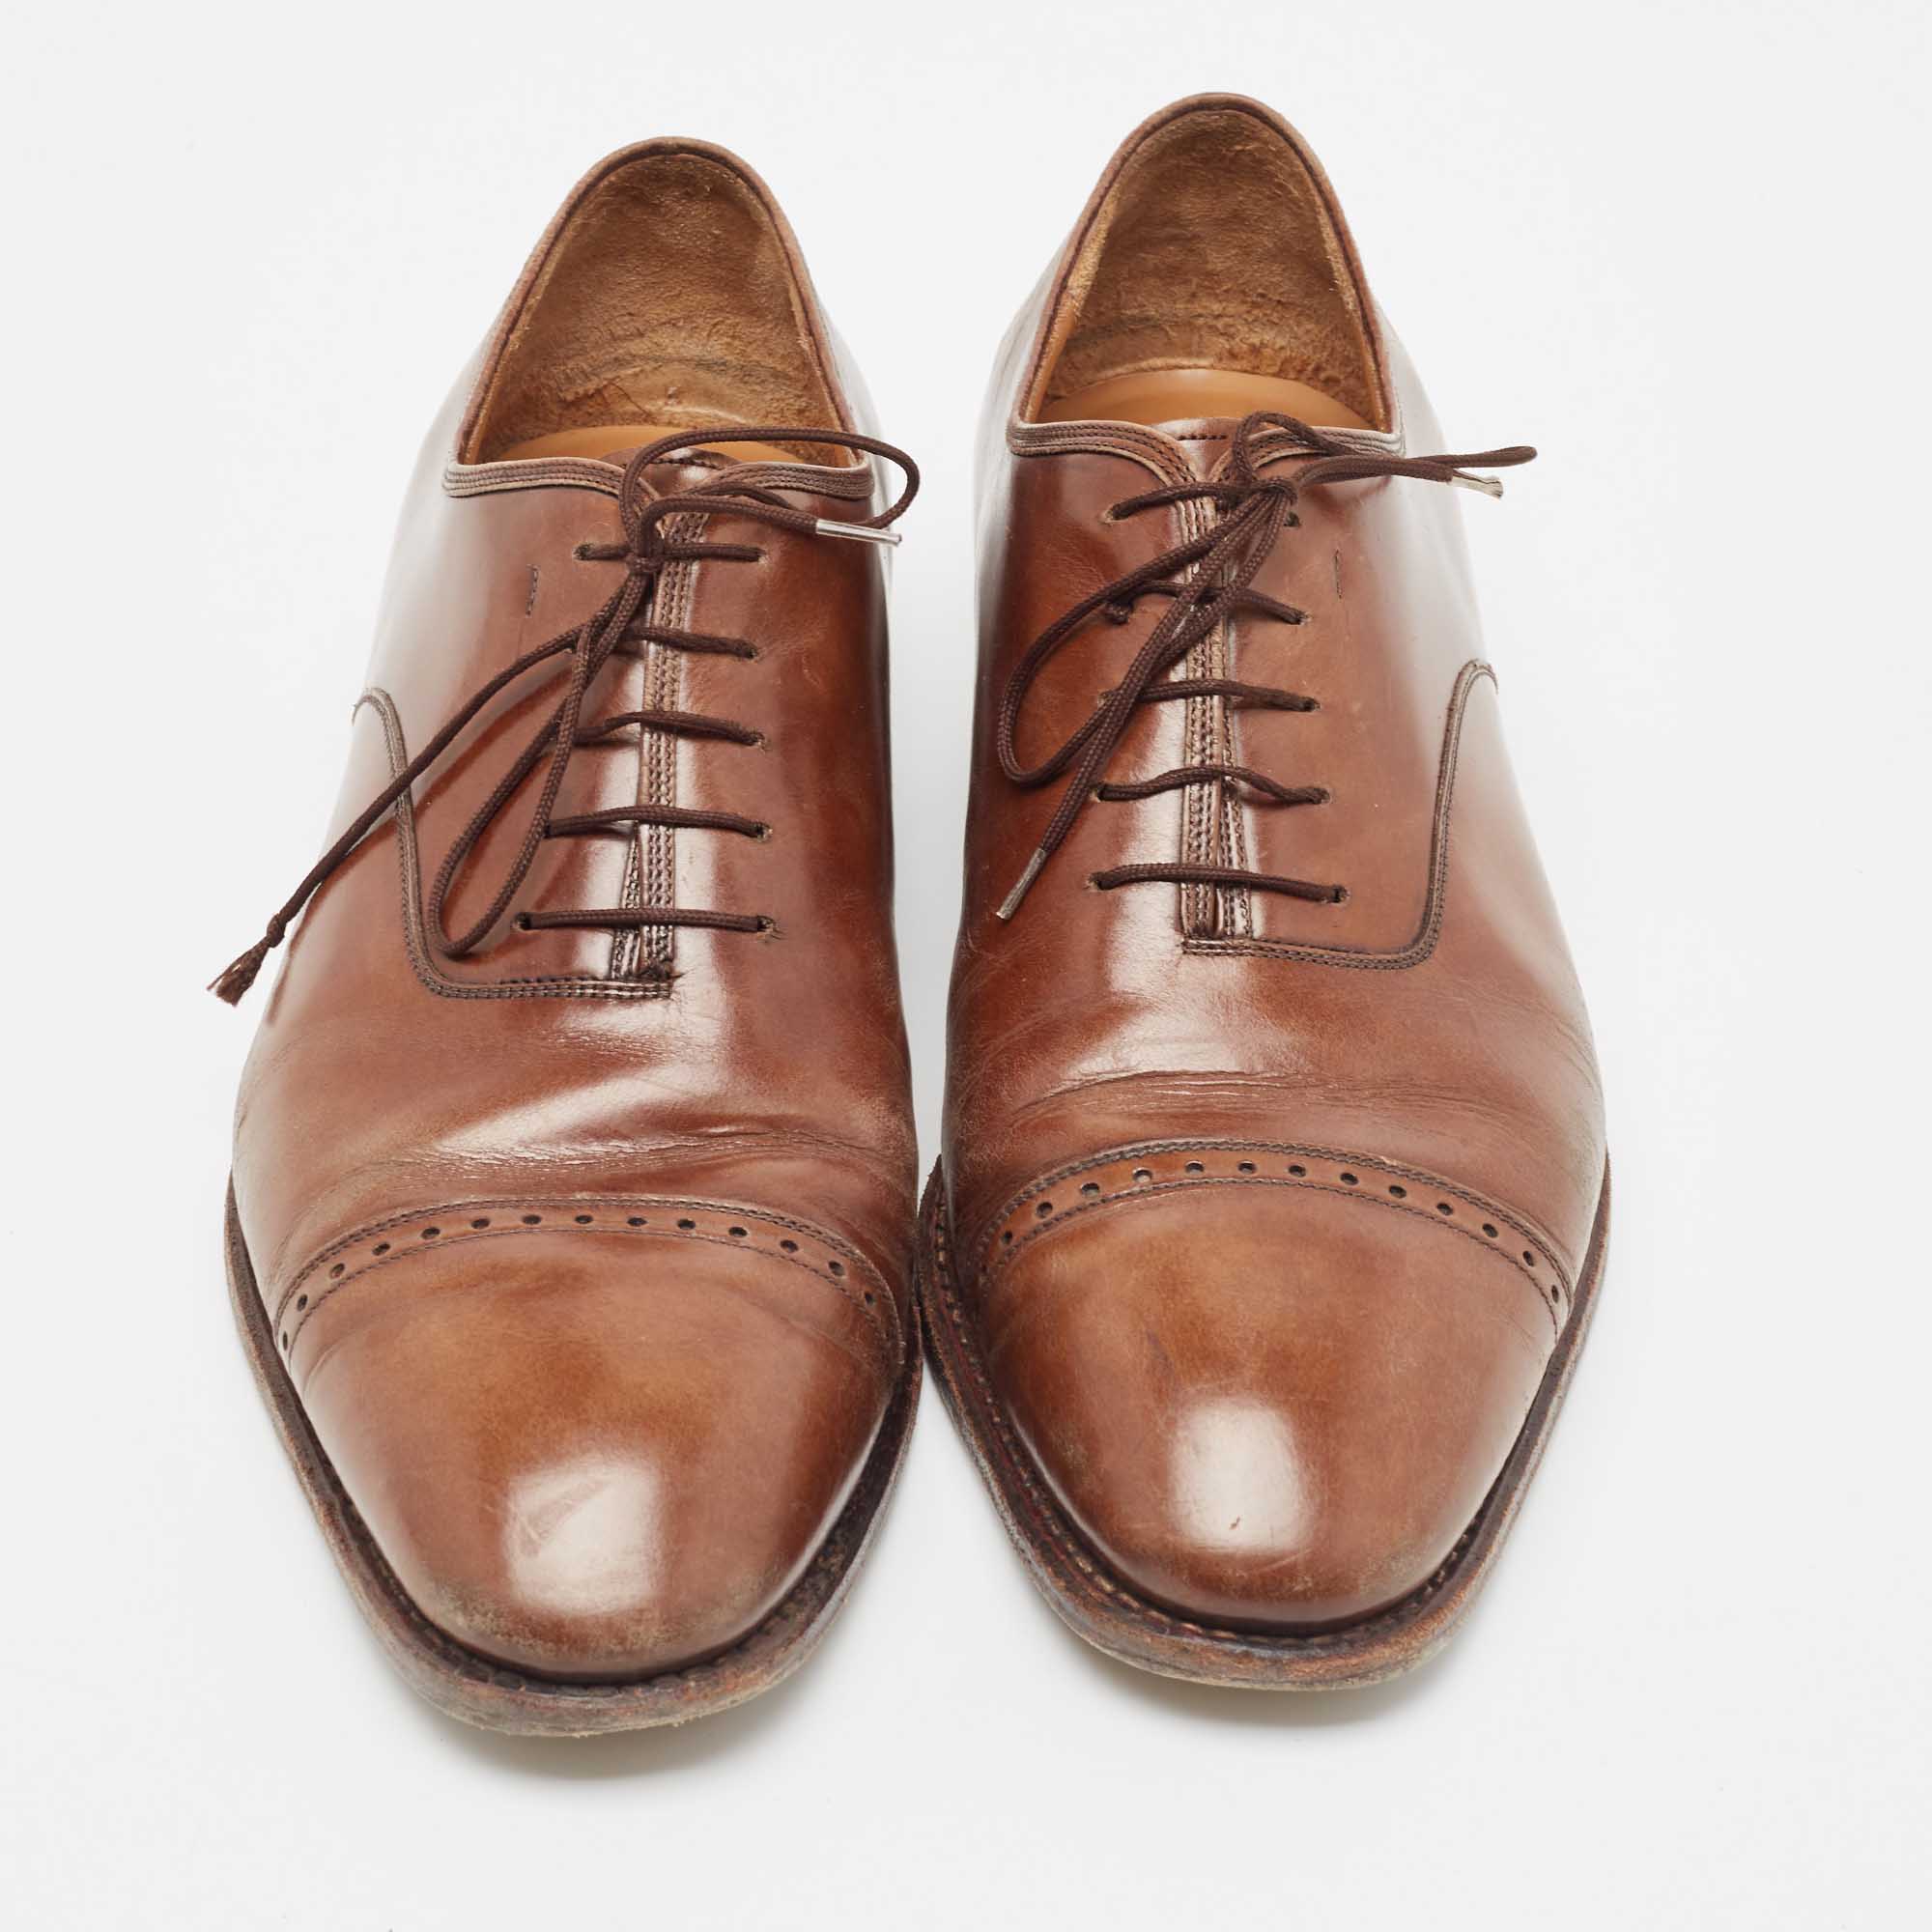 Salvatore Ferragamo Brown Leather Oxfords Size 44.5